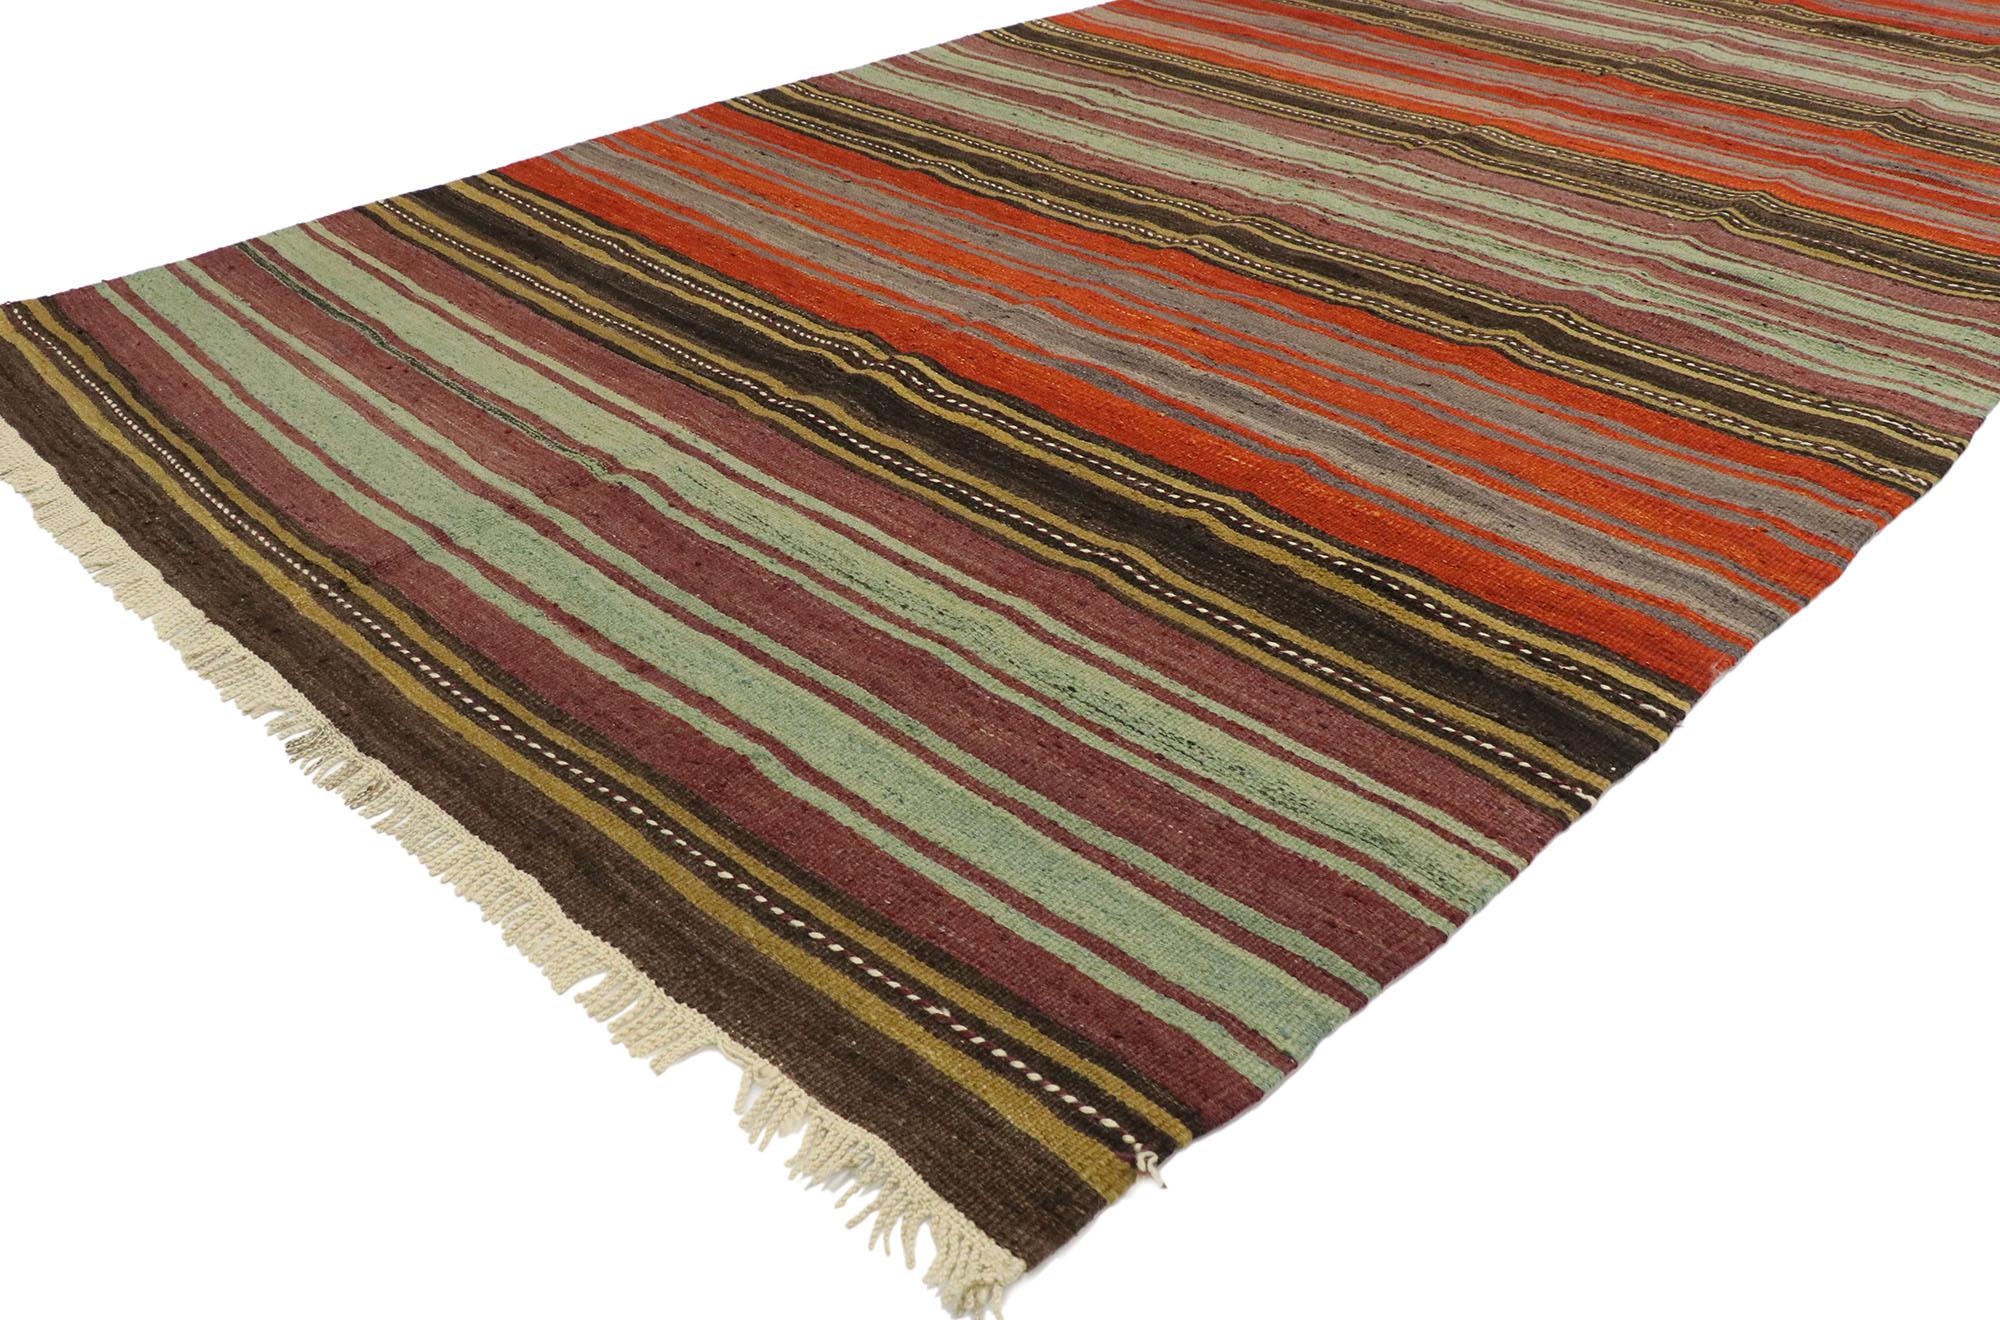 53114 Türkischer gestreifter Kilim-Teppich, vintage. Mit seinen warmen Farbtönen und seiner robusten Schönheit schafft es dieser handgewebte, gestreifte Kelimteppich aus Wolle, zeitgenössische, moderne und traditionelle Designelemente miteinander zu